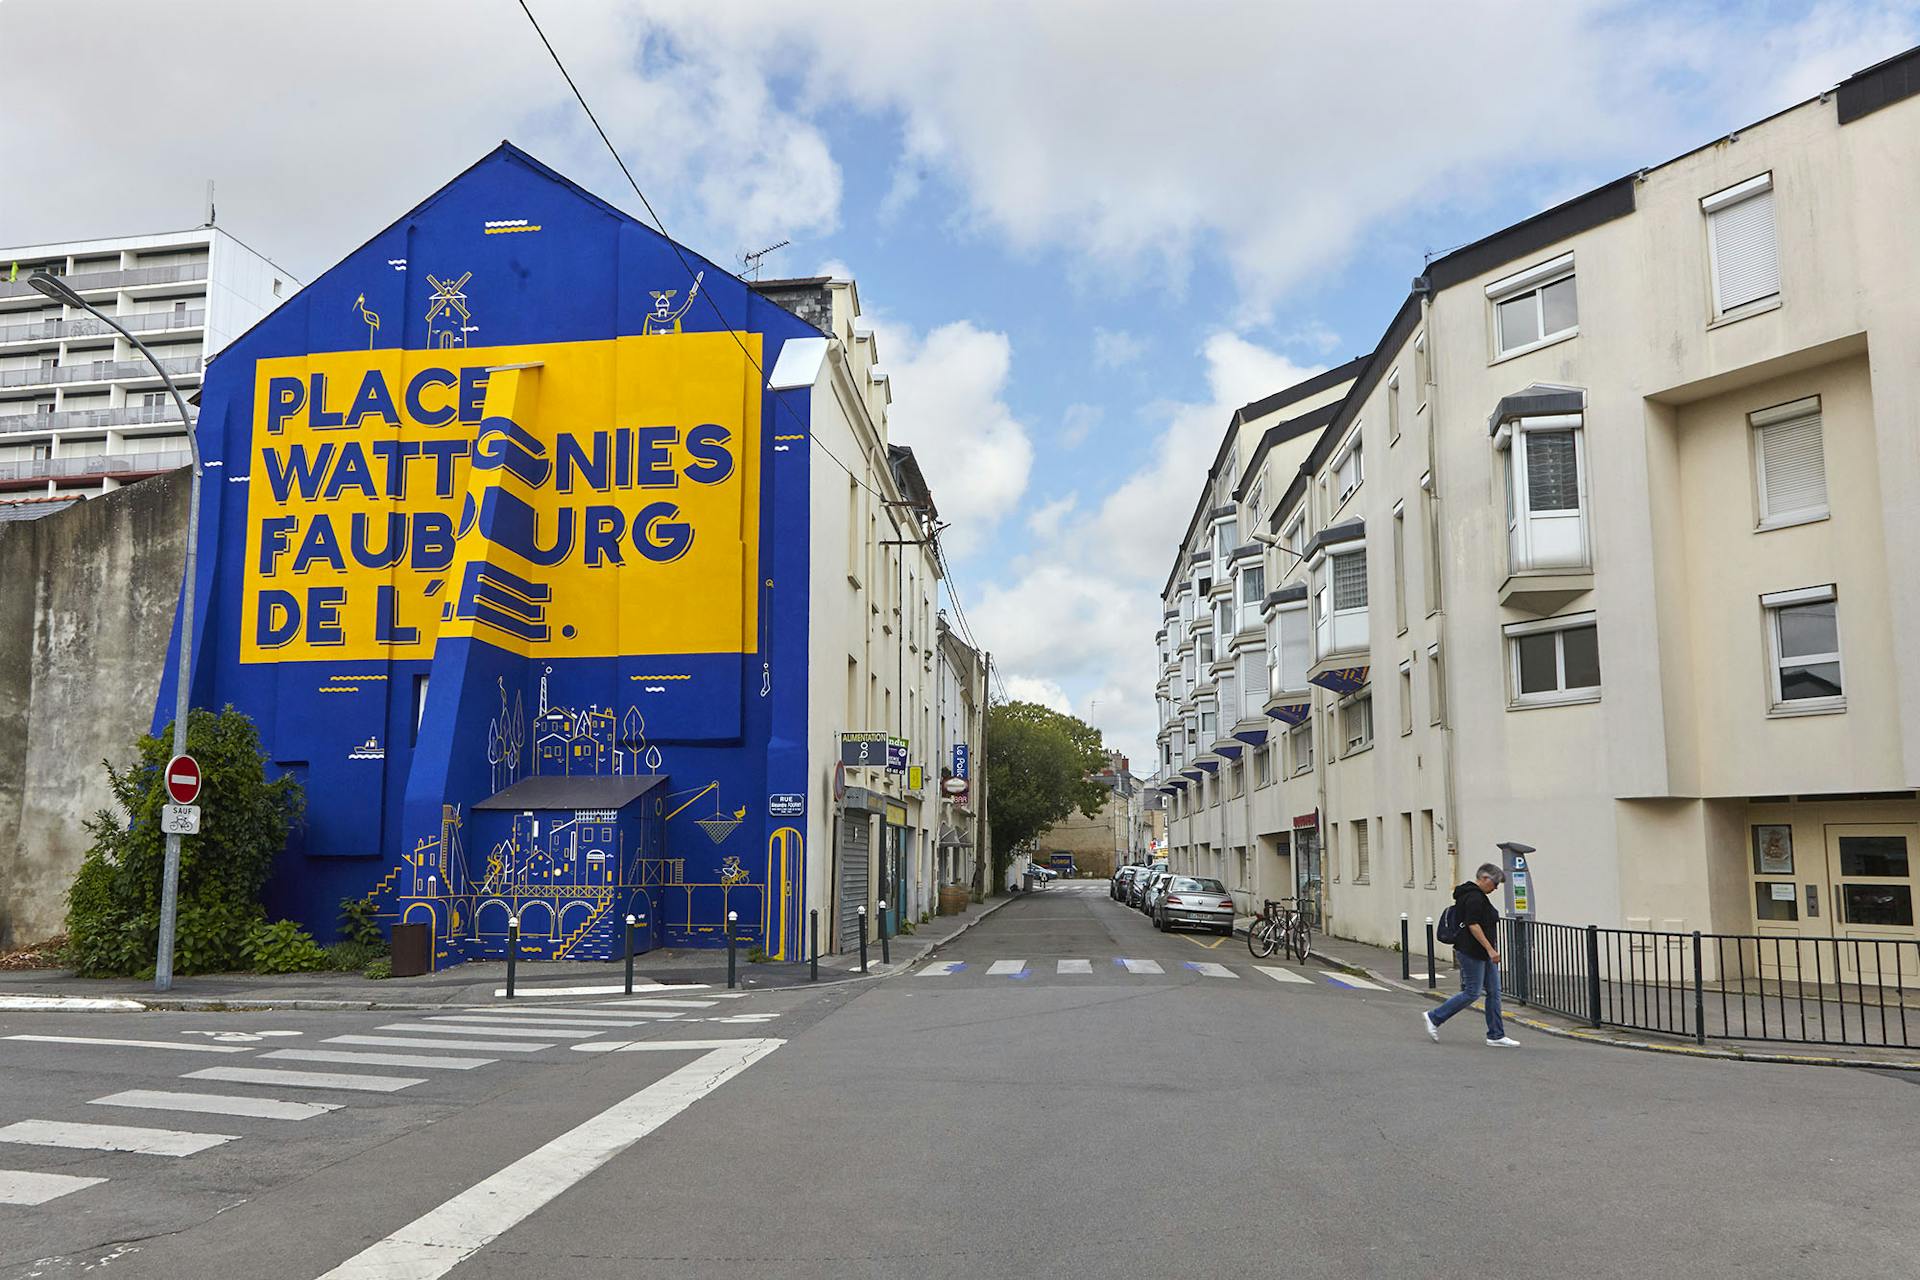 Street Art d'une fresque murale extérieure place Wattignies, Faubourg de l'Île, quartier Biesse à Nantes.